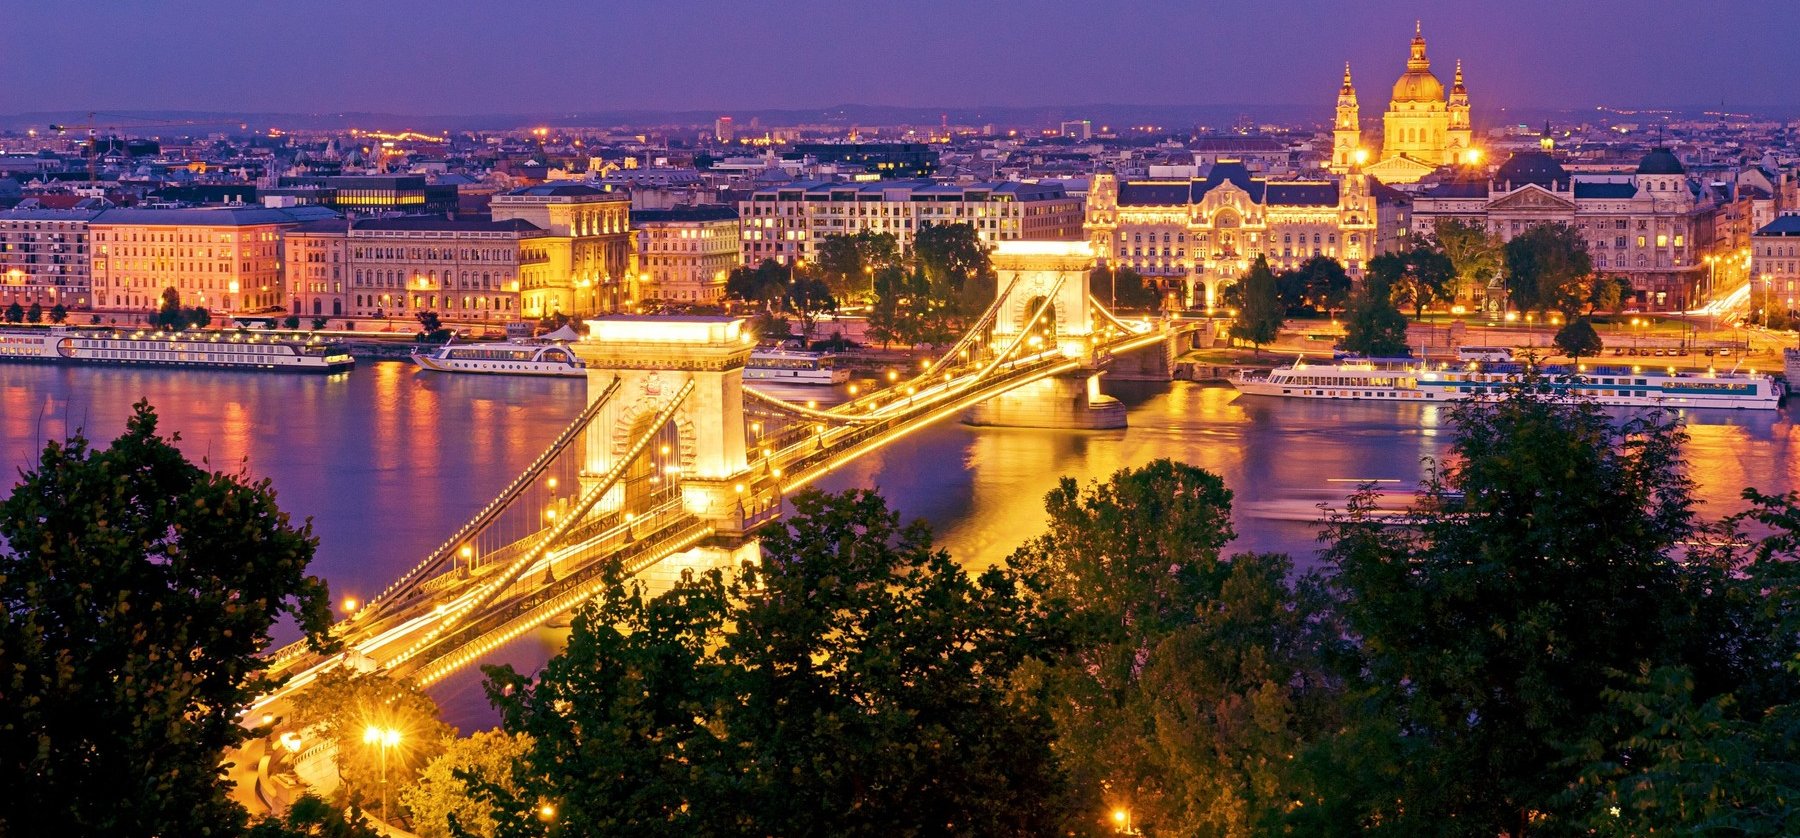 Állvakarós kvíz: mennyire ismered Budapestet? Ez a kvíz még azokon is csúnyán ki tud fogni, akik a fővárosban nőttek fel